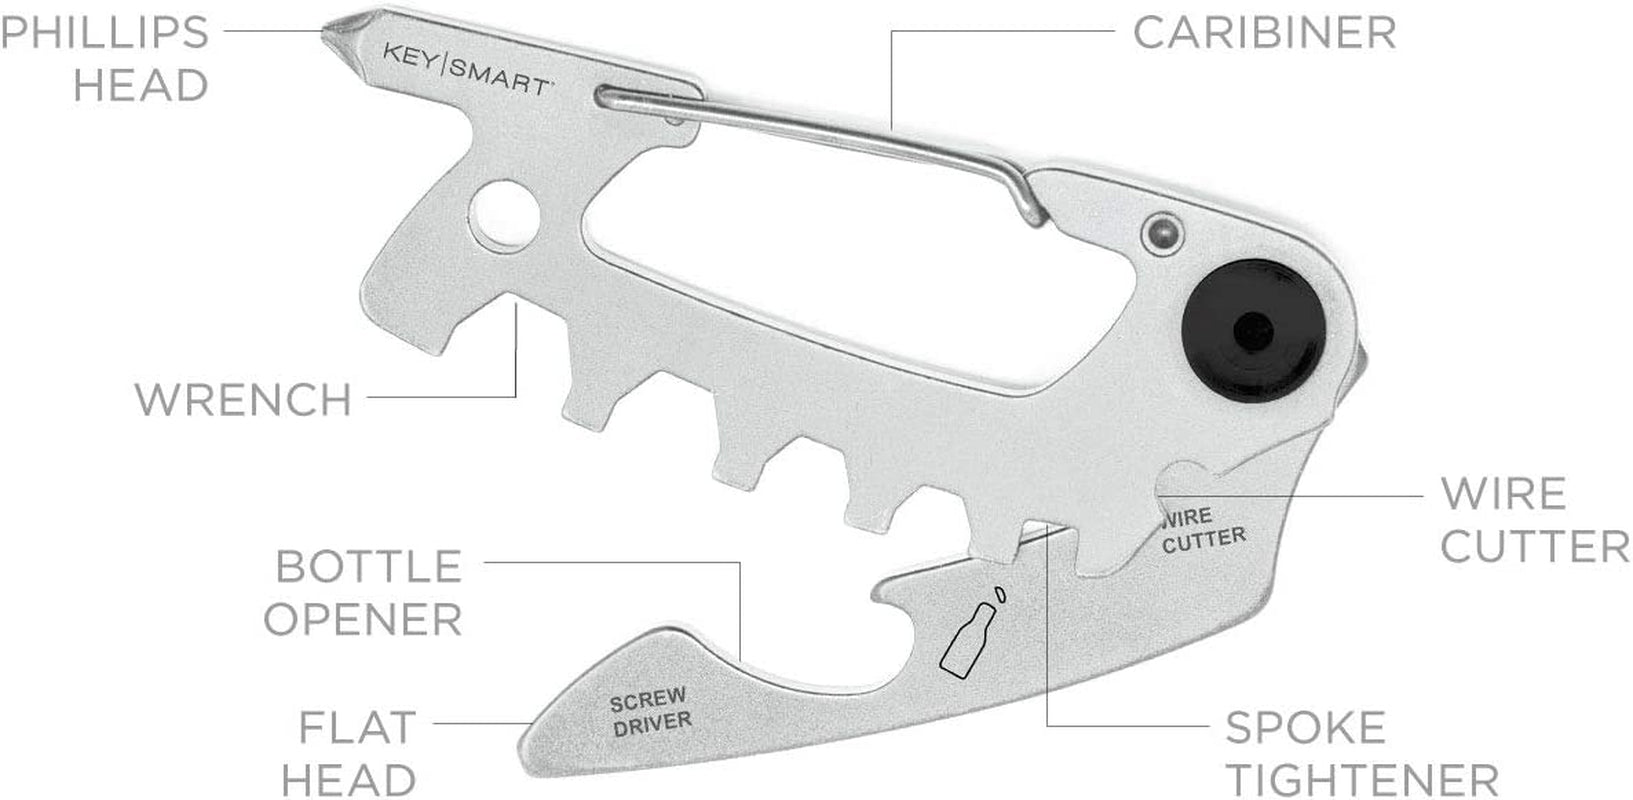 KeySmart, Keysmart Alltul Raptor - 6-In-1 Multi-Purpose Keychain Multitool with Bottle Opener, Wrench, Philips Head, Flat Head, Carabiner, and Steel Cutter